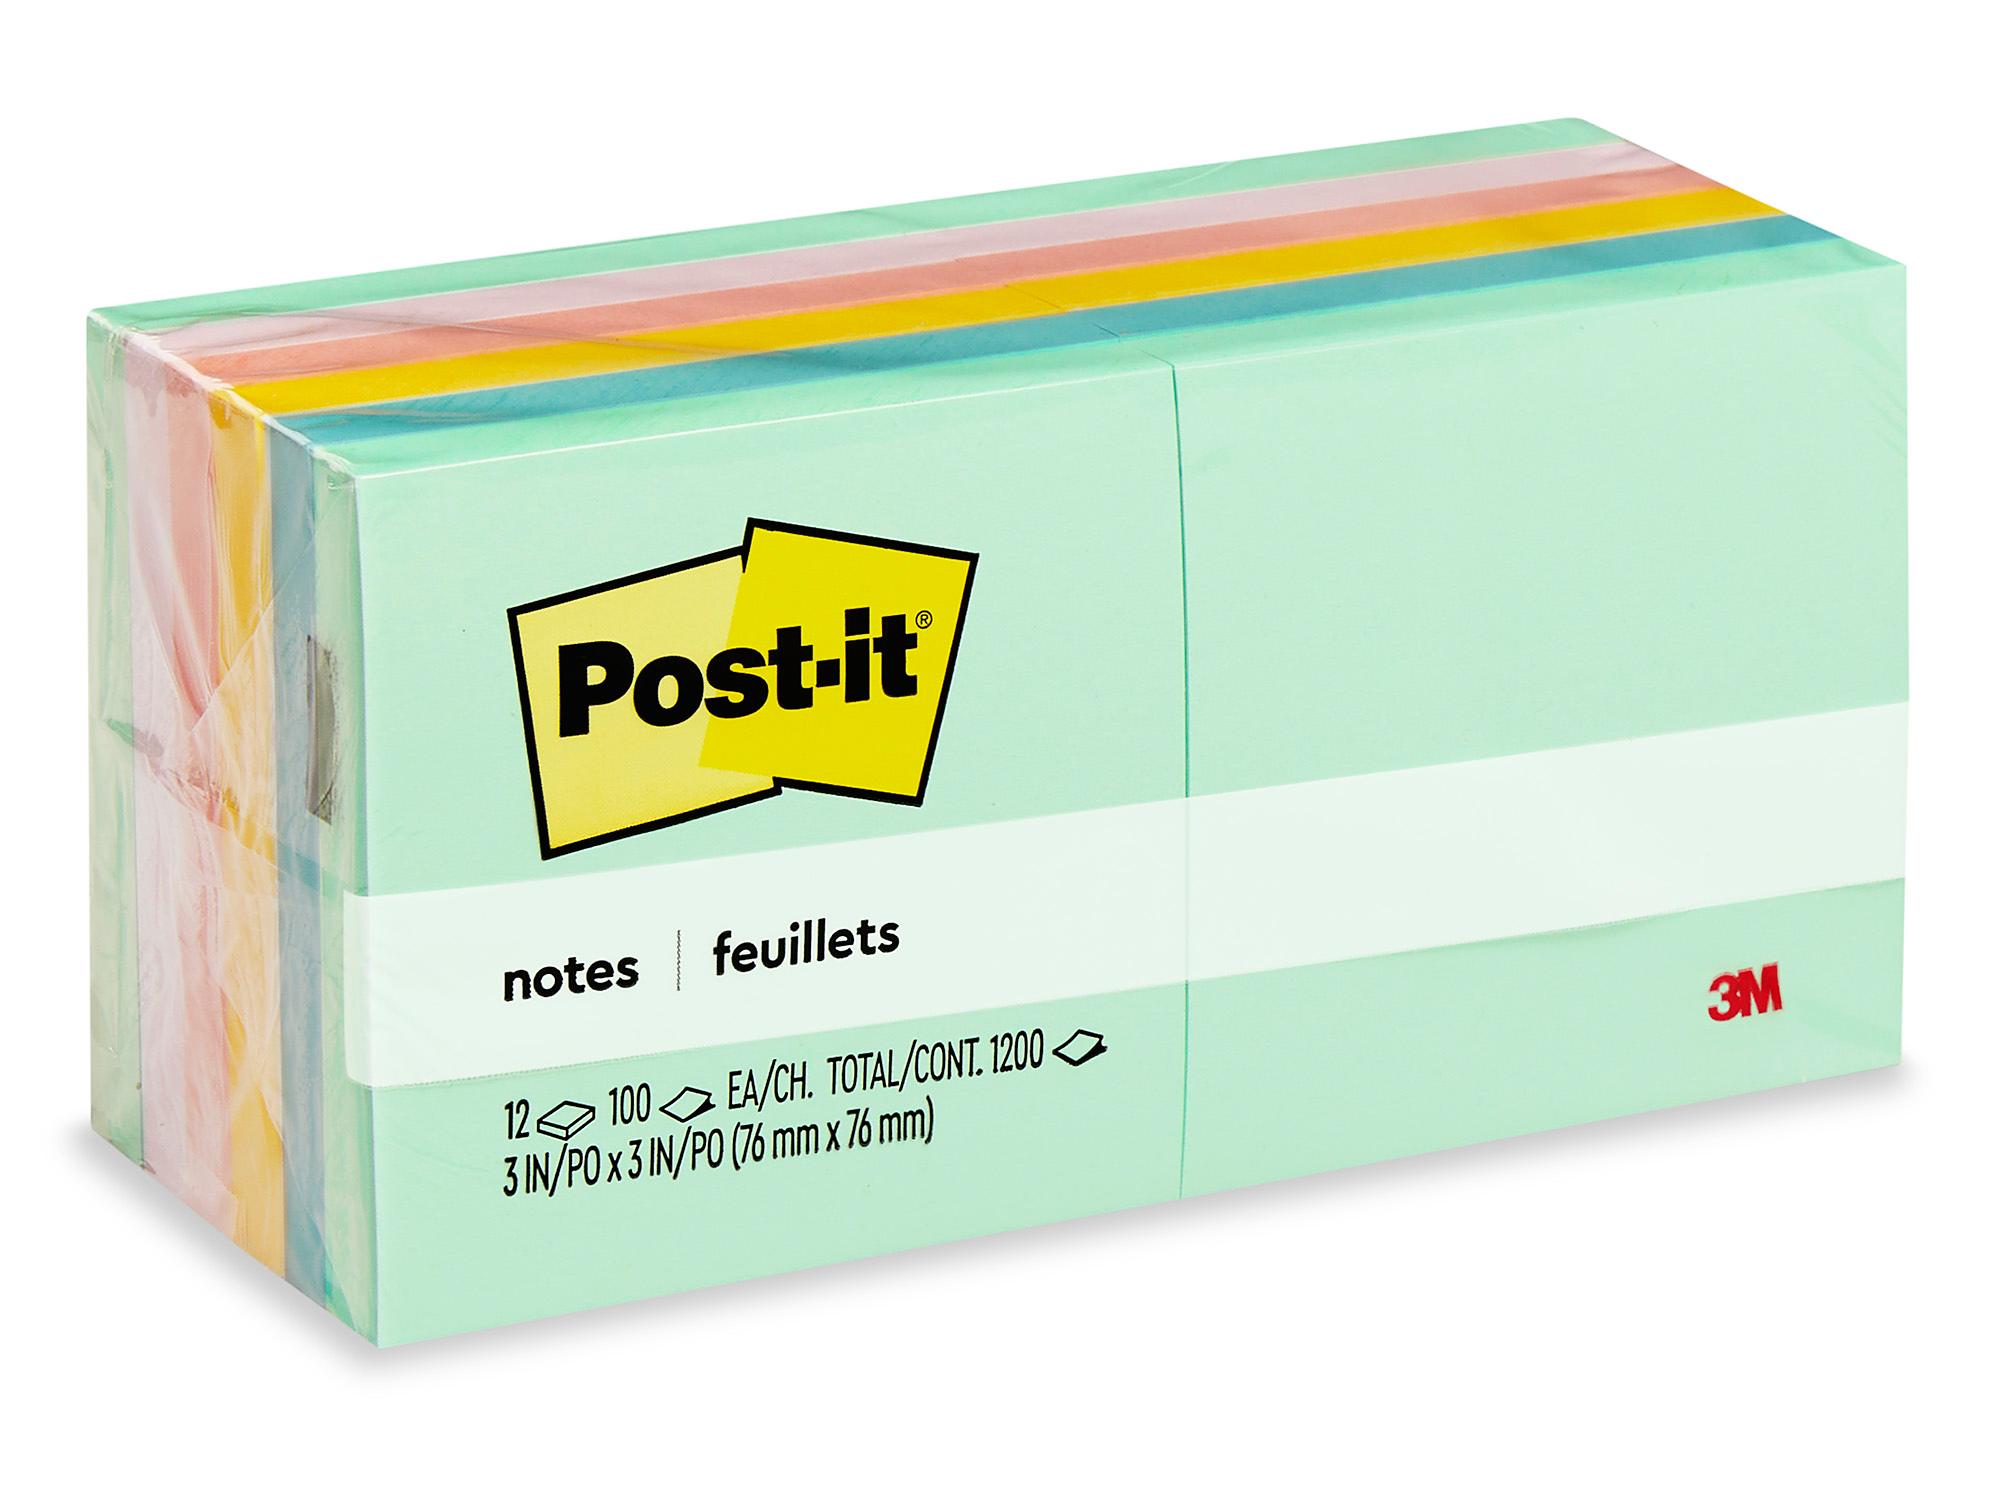 POST-IT Autocollants de taille moyenne 25 x 76 mm assorties fluo couleurs -  671-3 - 2 paquets de 3 blocs x 100 - Post it, notes repositionnables